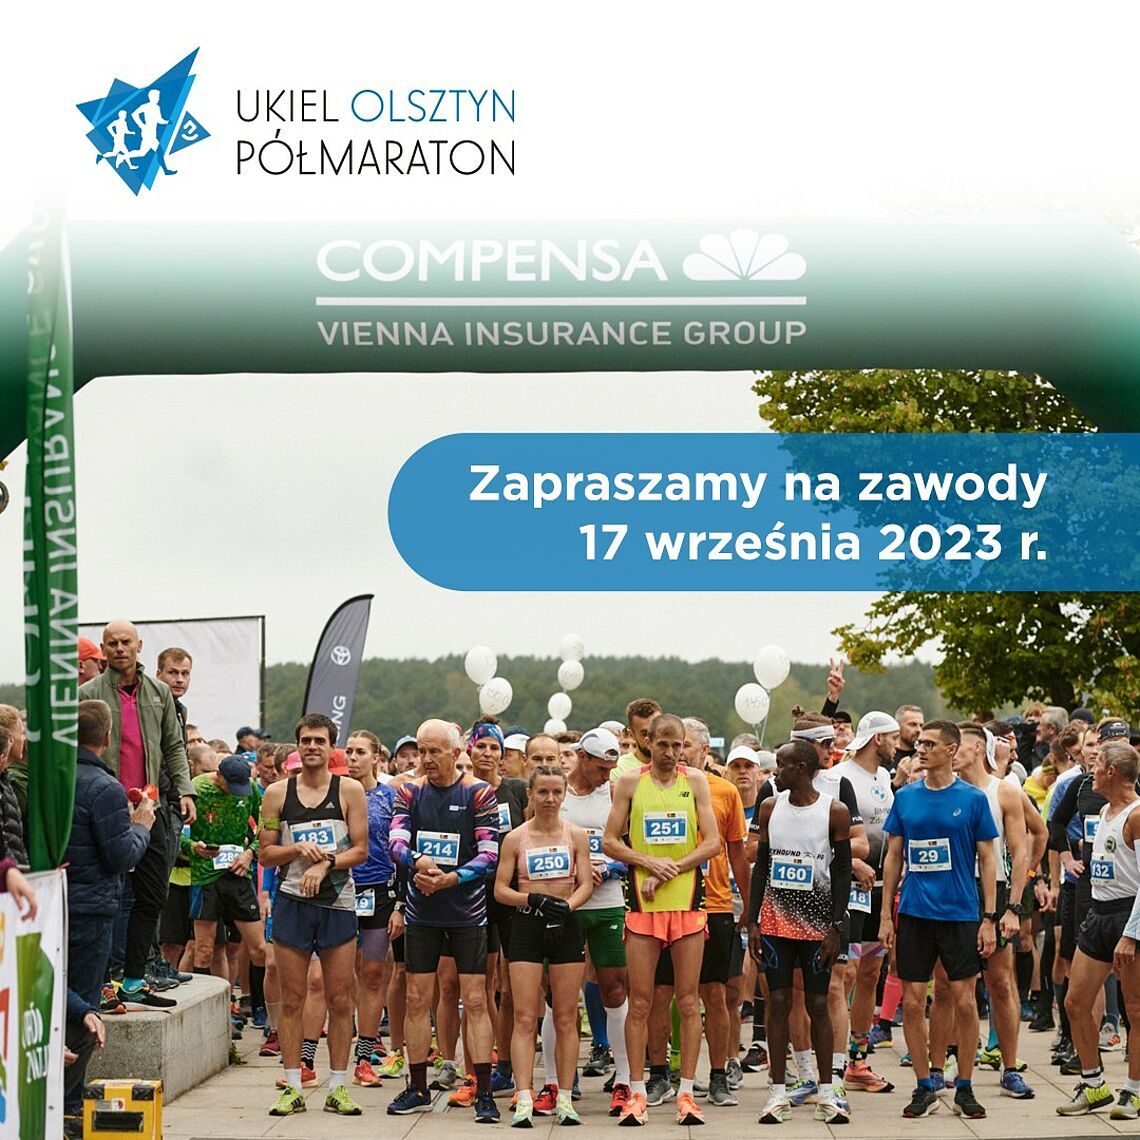 Miesiąc do Ukiel Olsztyn Półmaratonu!